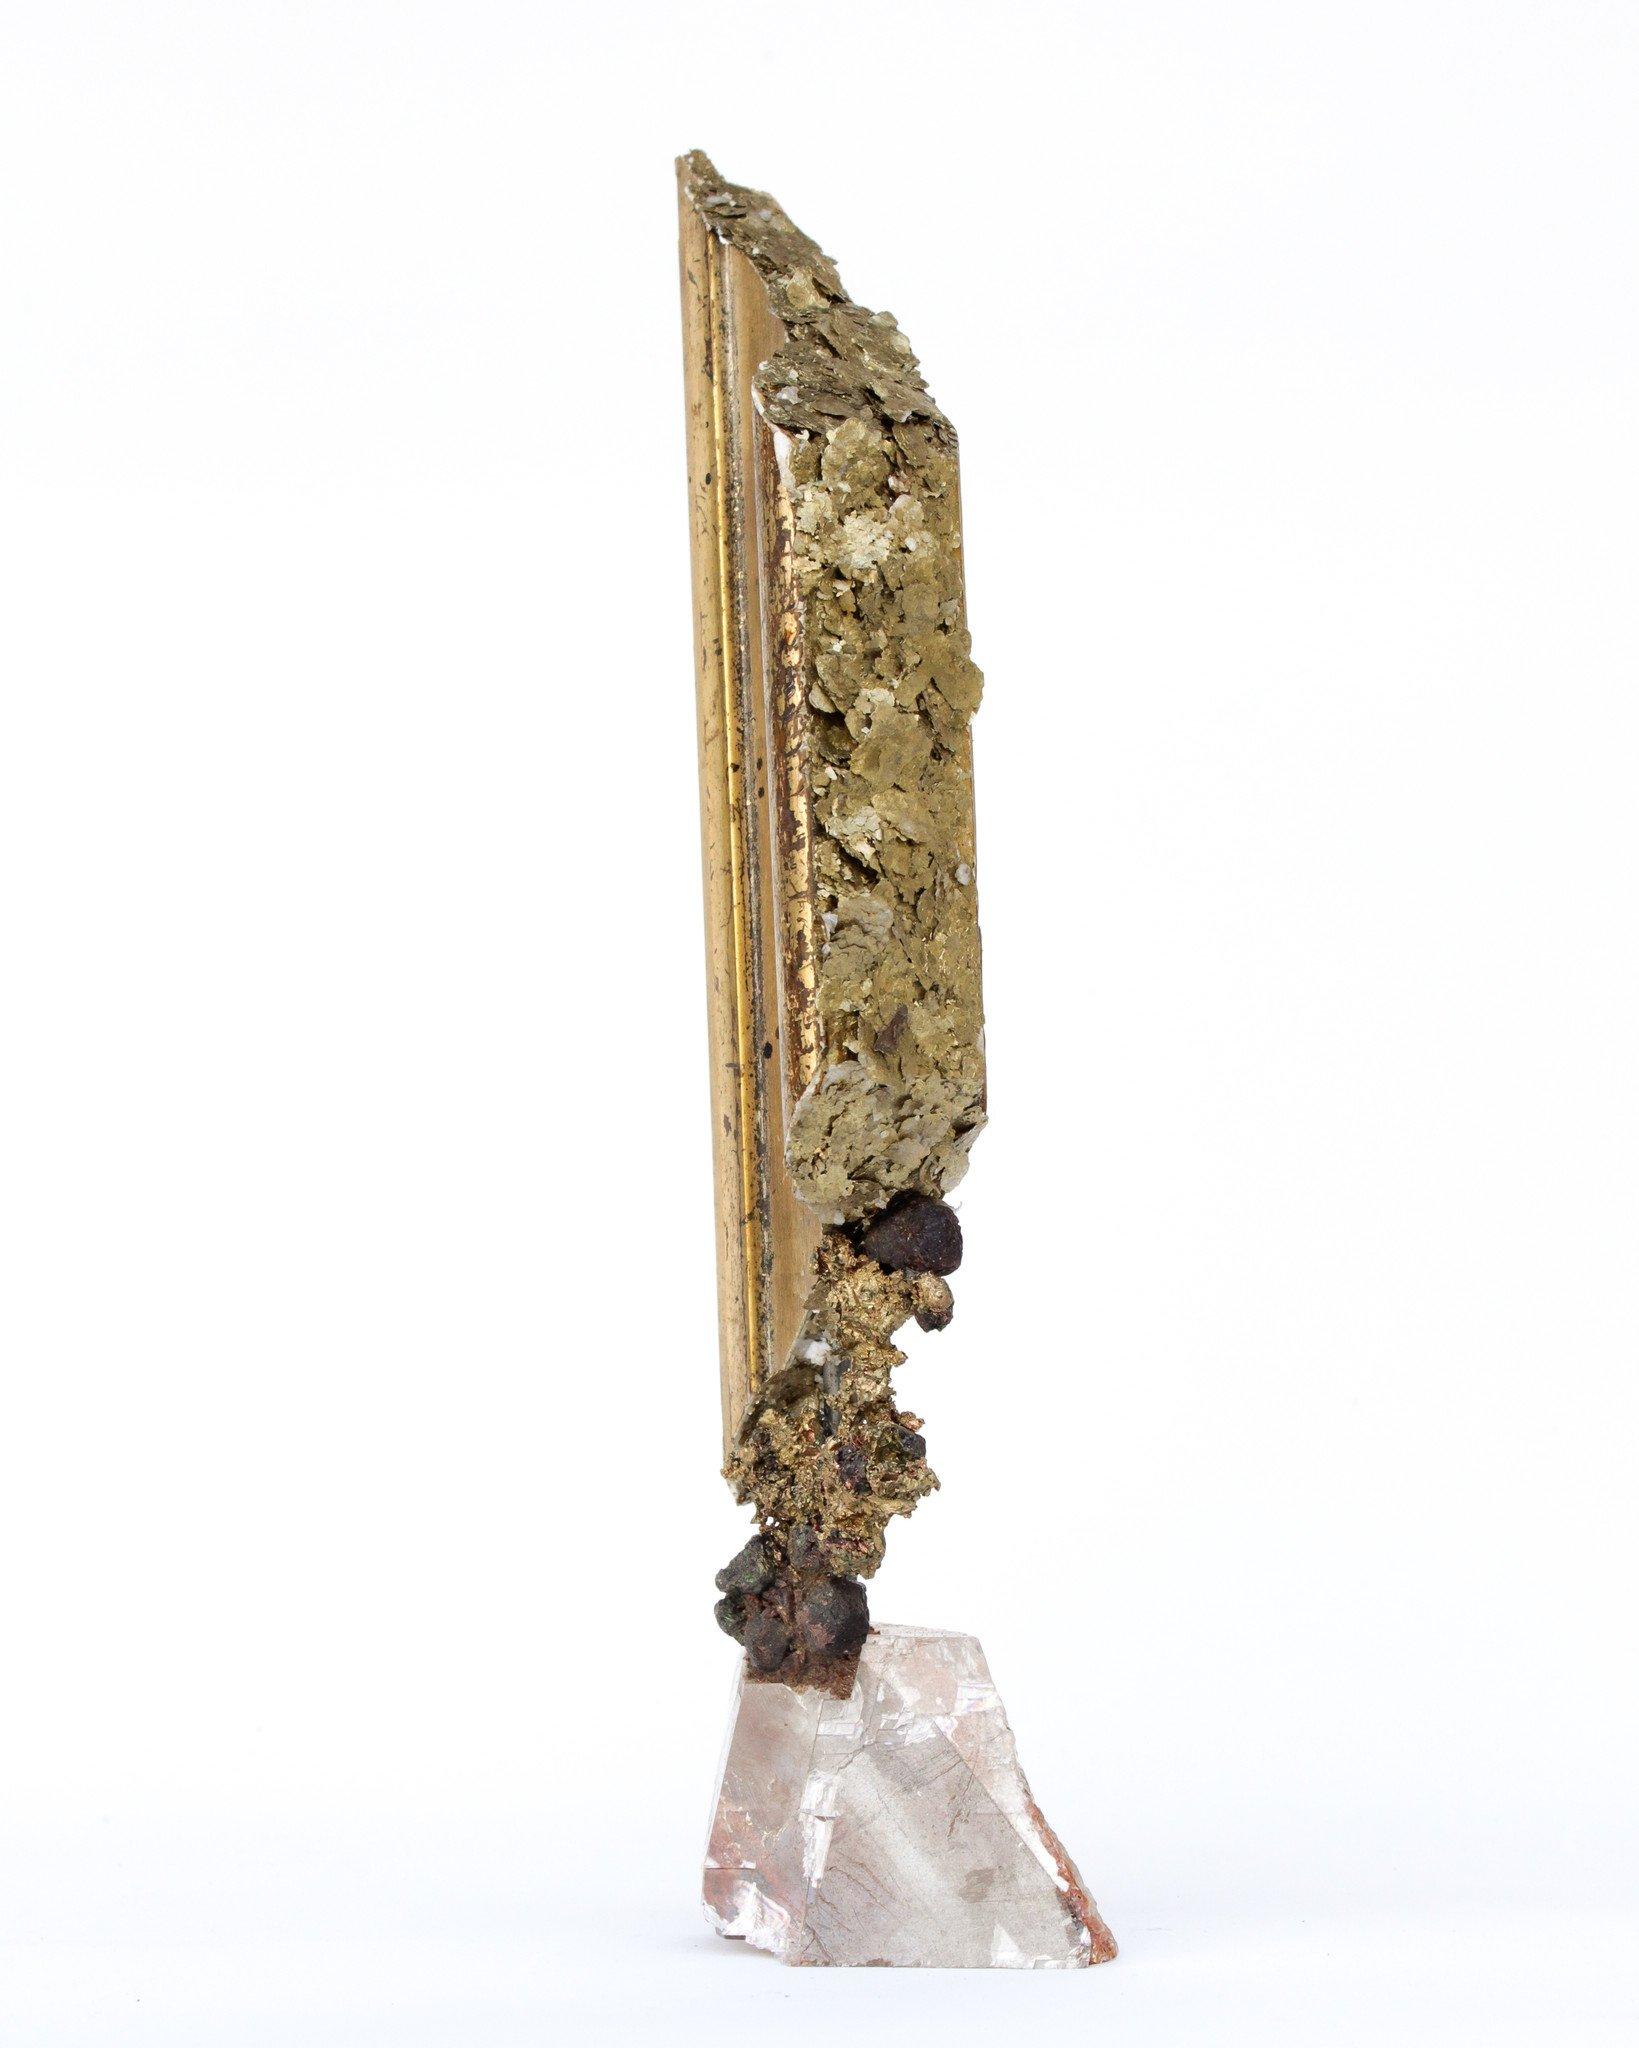 fragment italien du XVIIIe siècle décoré de cuivre de formation naturelle, de grenats et de mica doré sur une base de calcite optique.

Le fragment italien provient à l'origine d'une pièce dans une église de Toscane. Elle est ensuite montée sur la